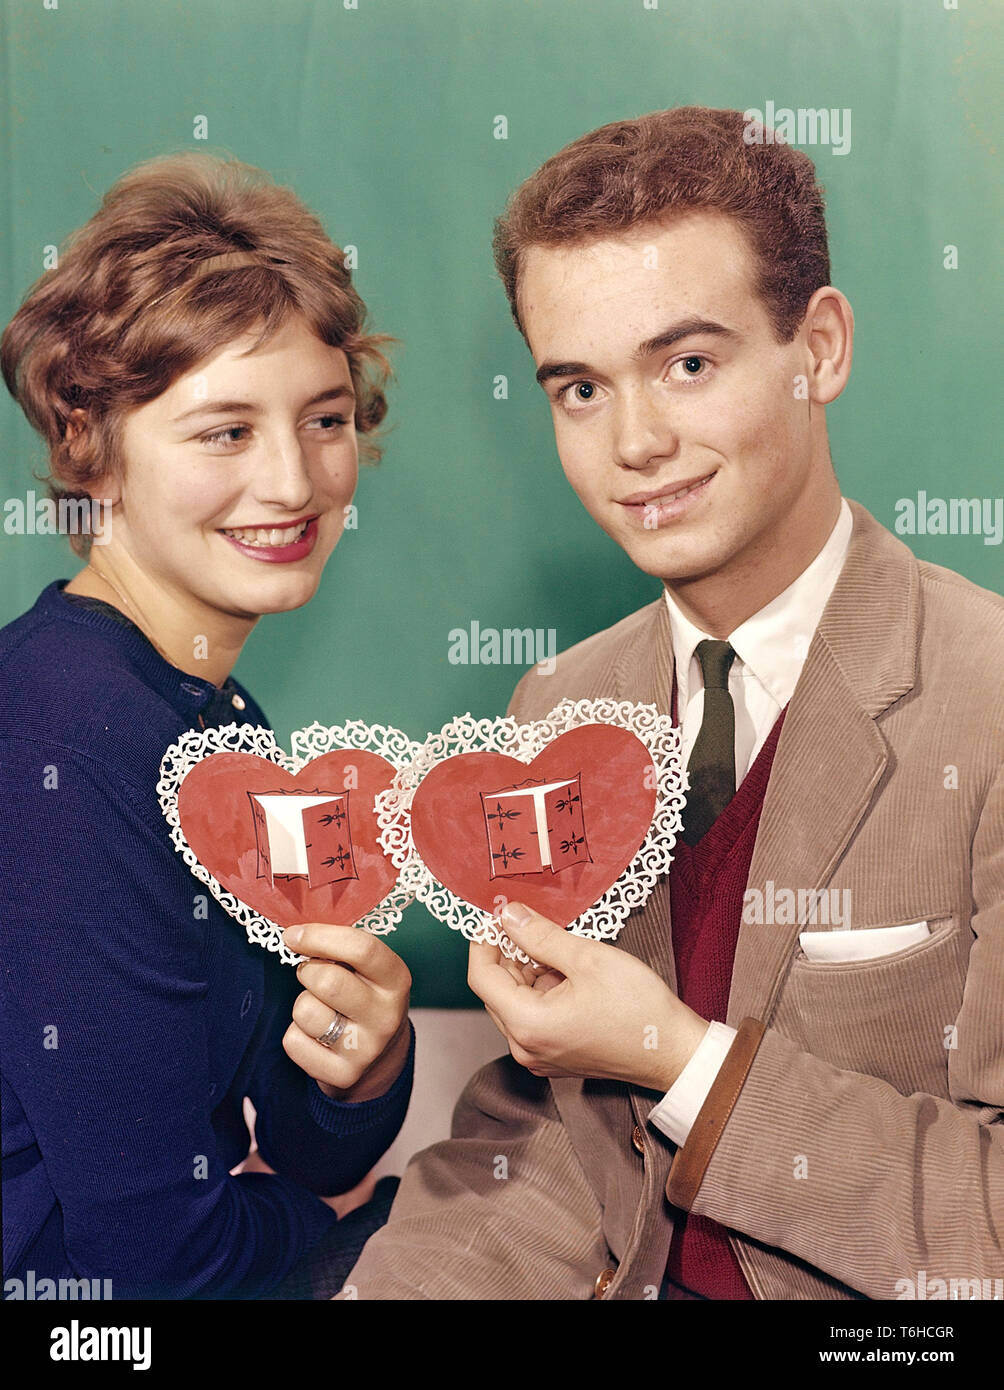 Paar von den 1950er Jahren. Eine junge Frau und Mann sind jeweils eine Holding in Herzform Papiere farbige in Rot mit Ornamenten um ihn herum. Eine Illustration für den Valentinstag. Schweden 1950. Stockfoto